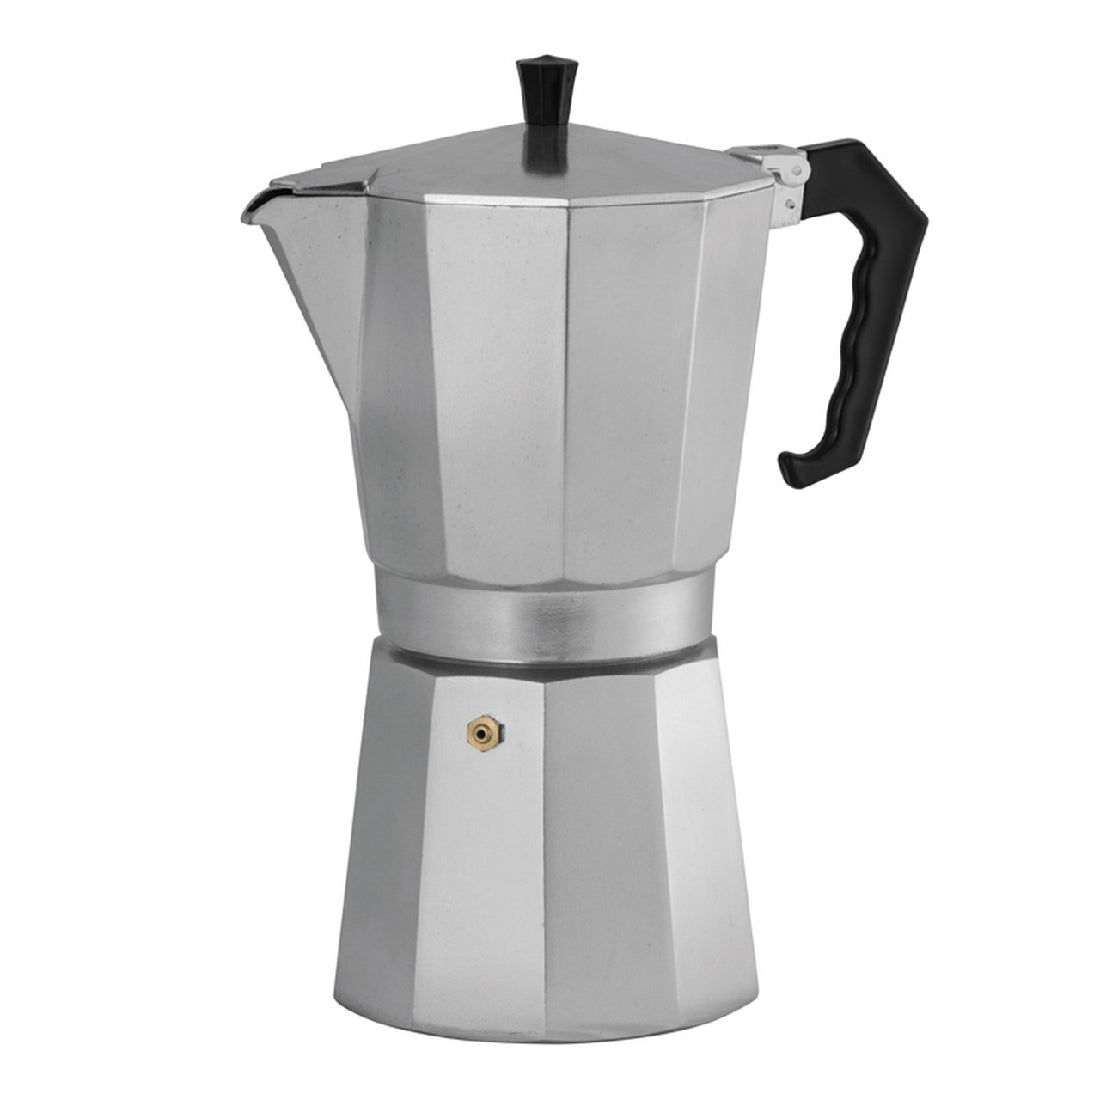 Avanti Classic Pro 12cup/600ml Espresso Coffee Maker